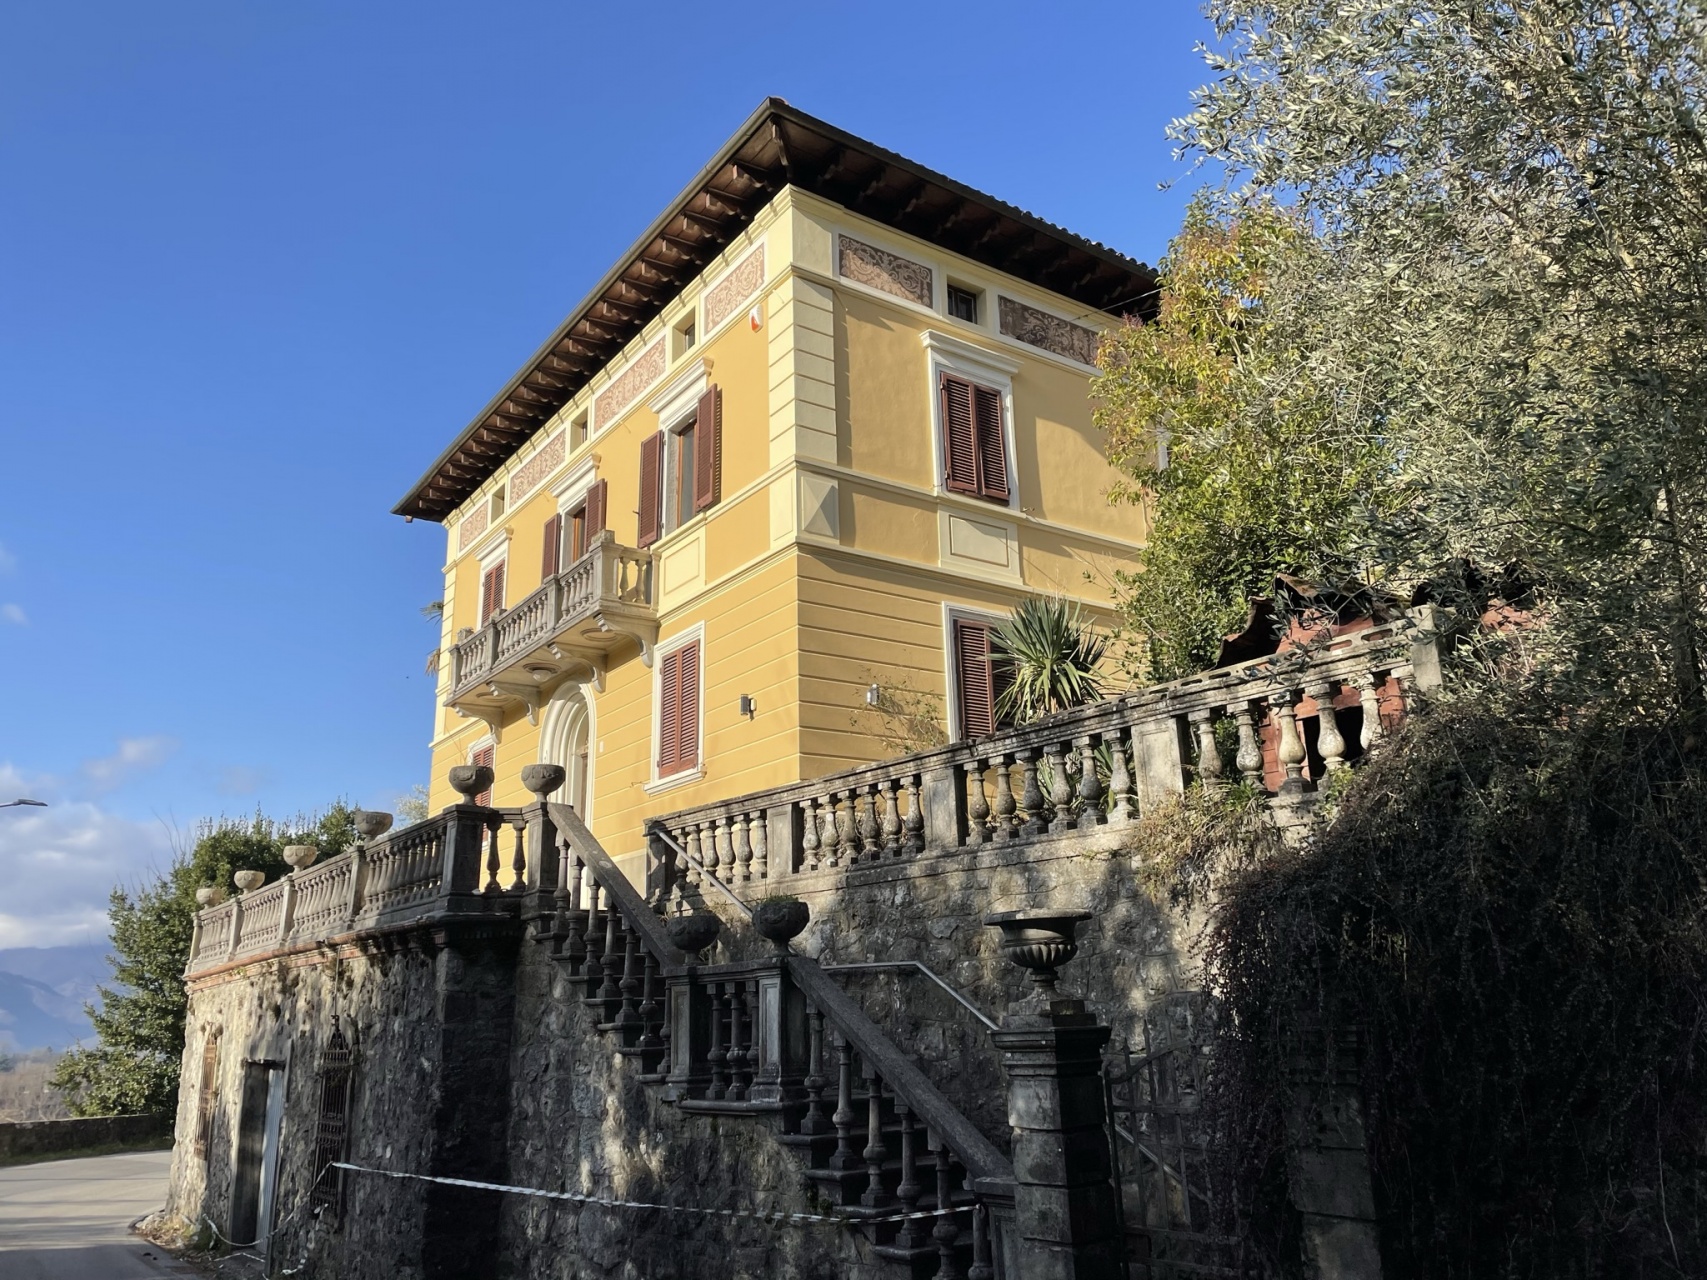 foto Villa in stile Liberty con spazio esterno, a Barga – Lucca.